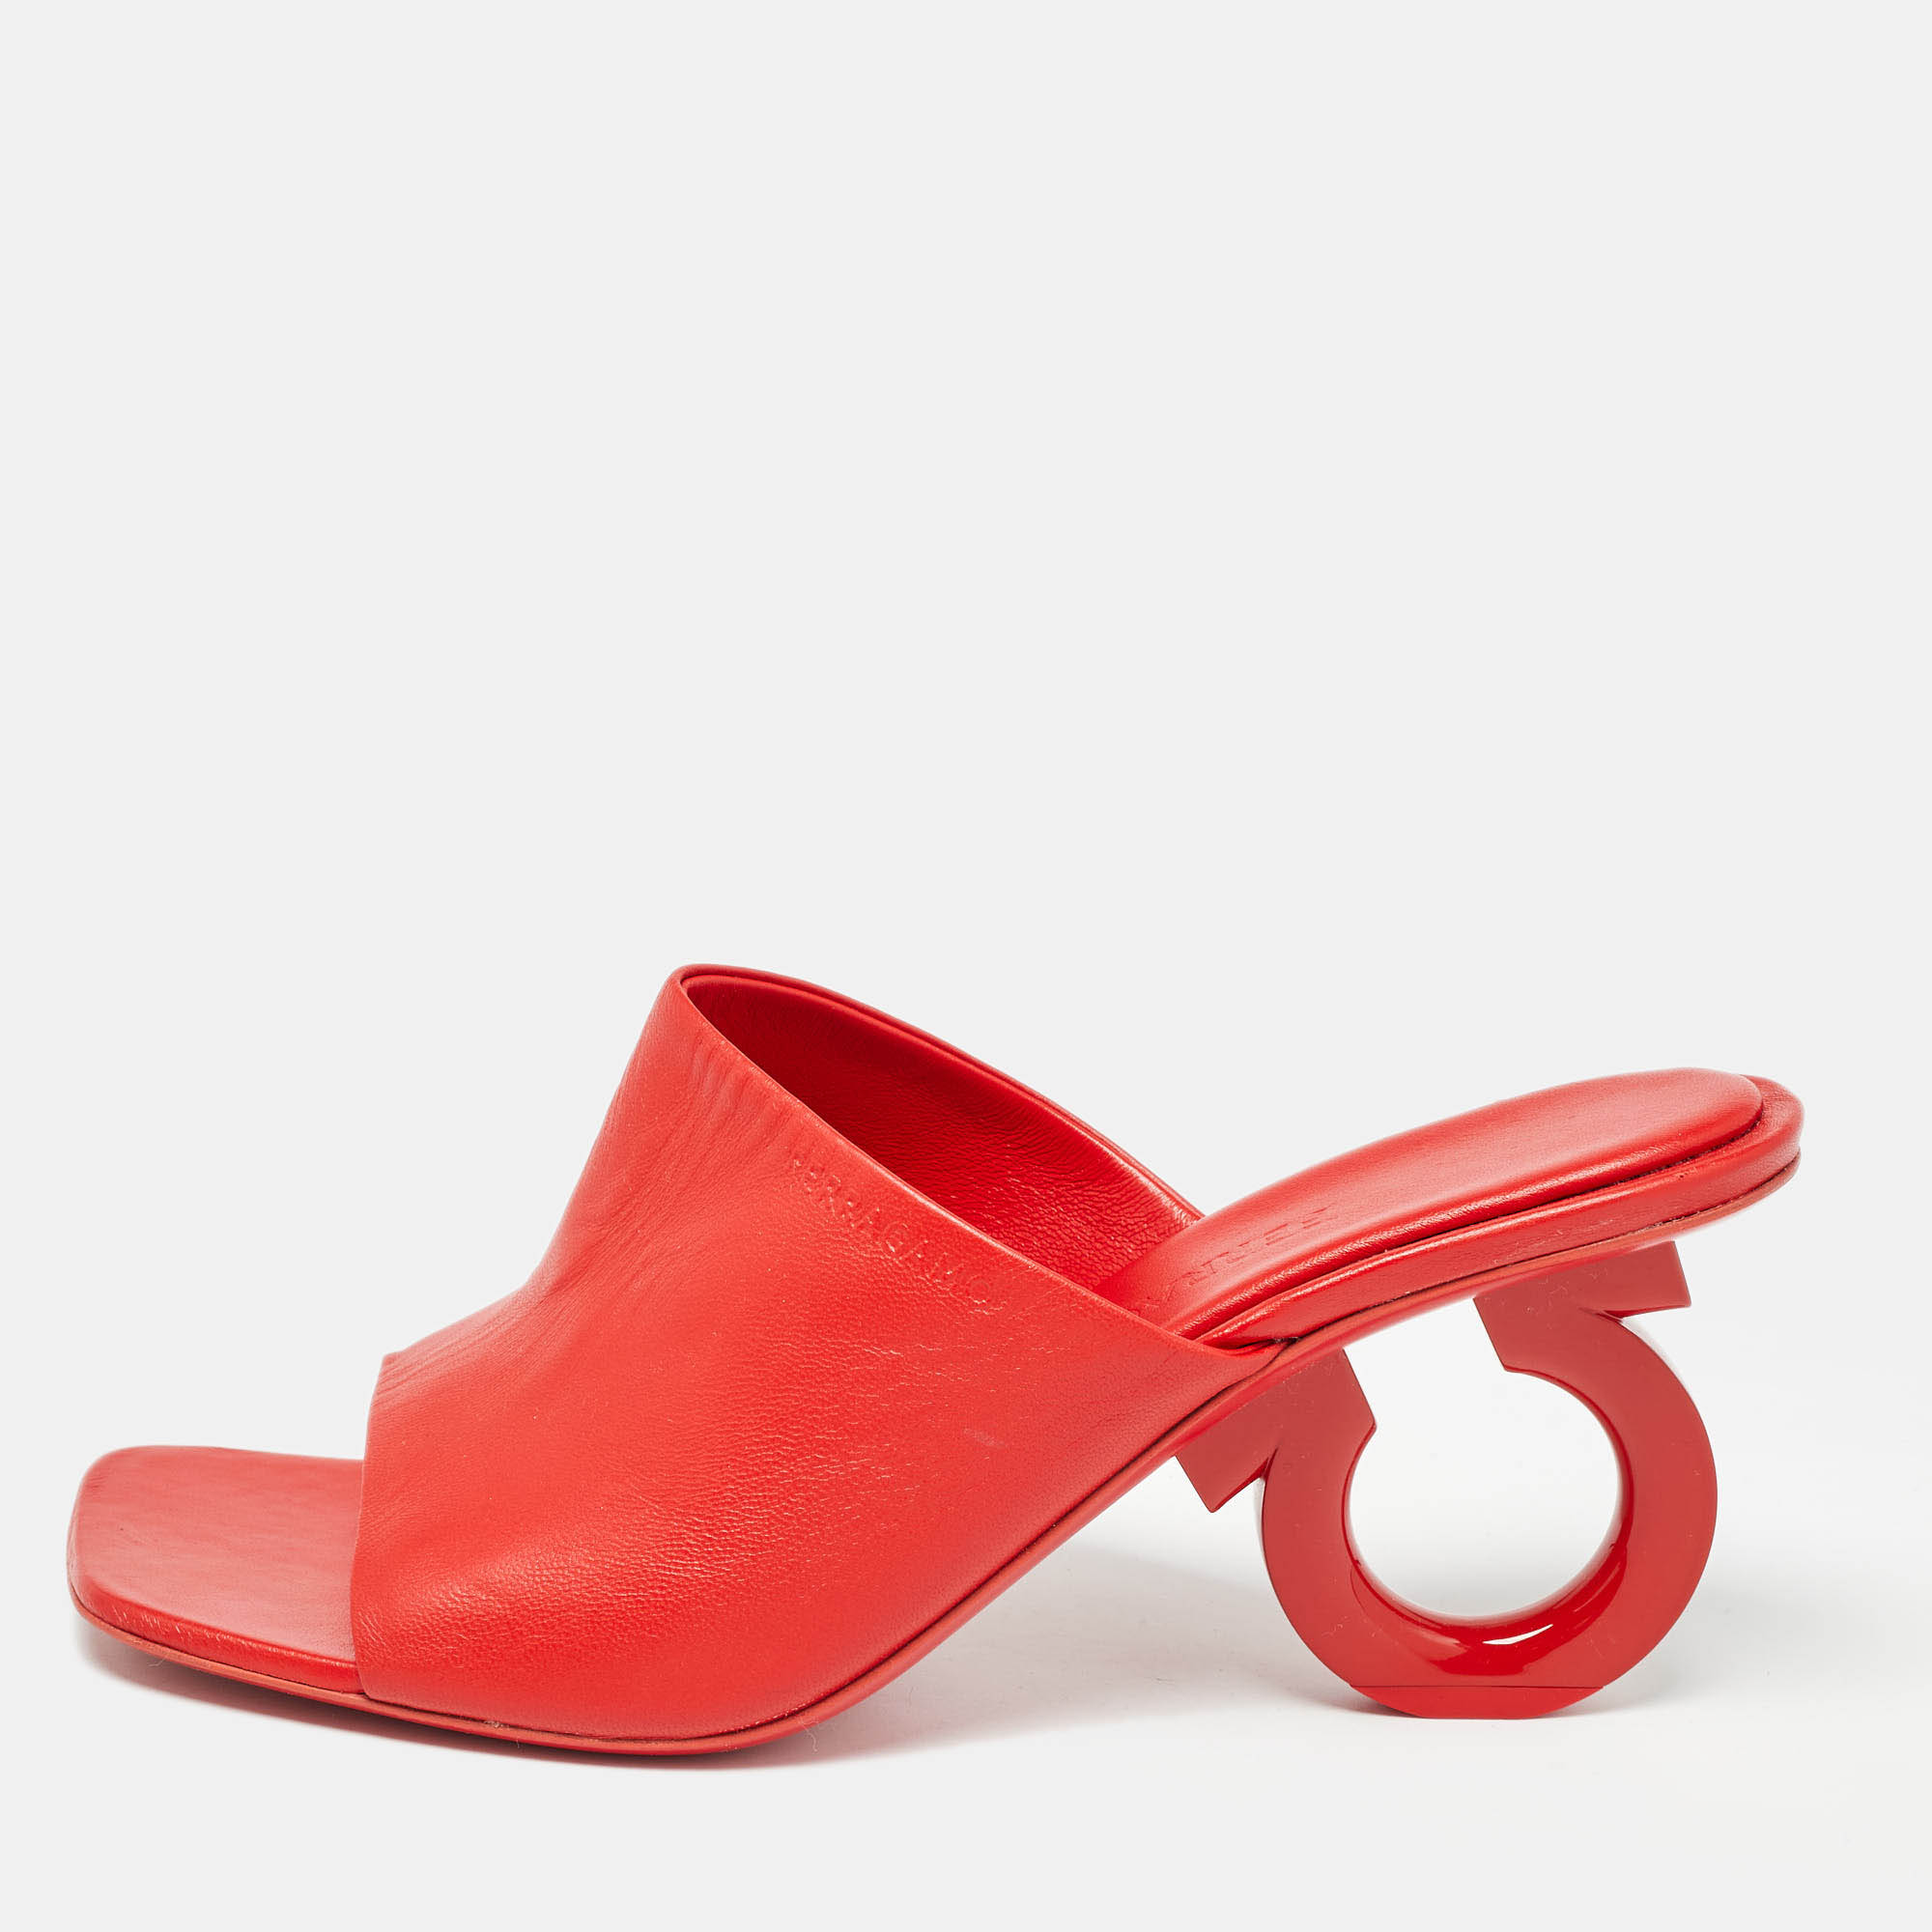 

Salvatore Ferragamo Red Leather Open Toe Slide Sandals Size 39.5